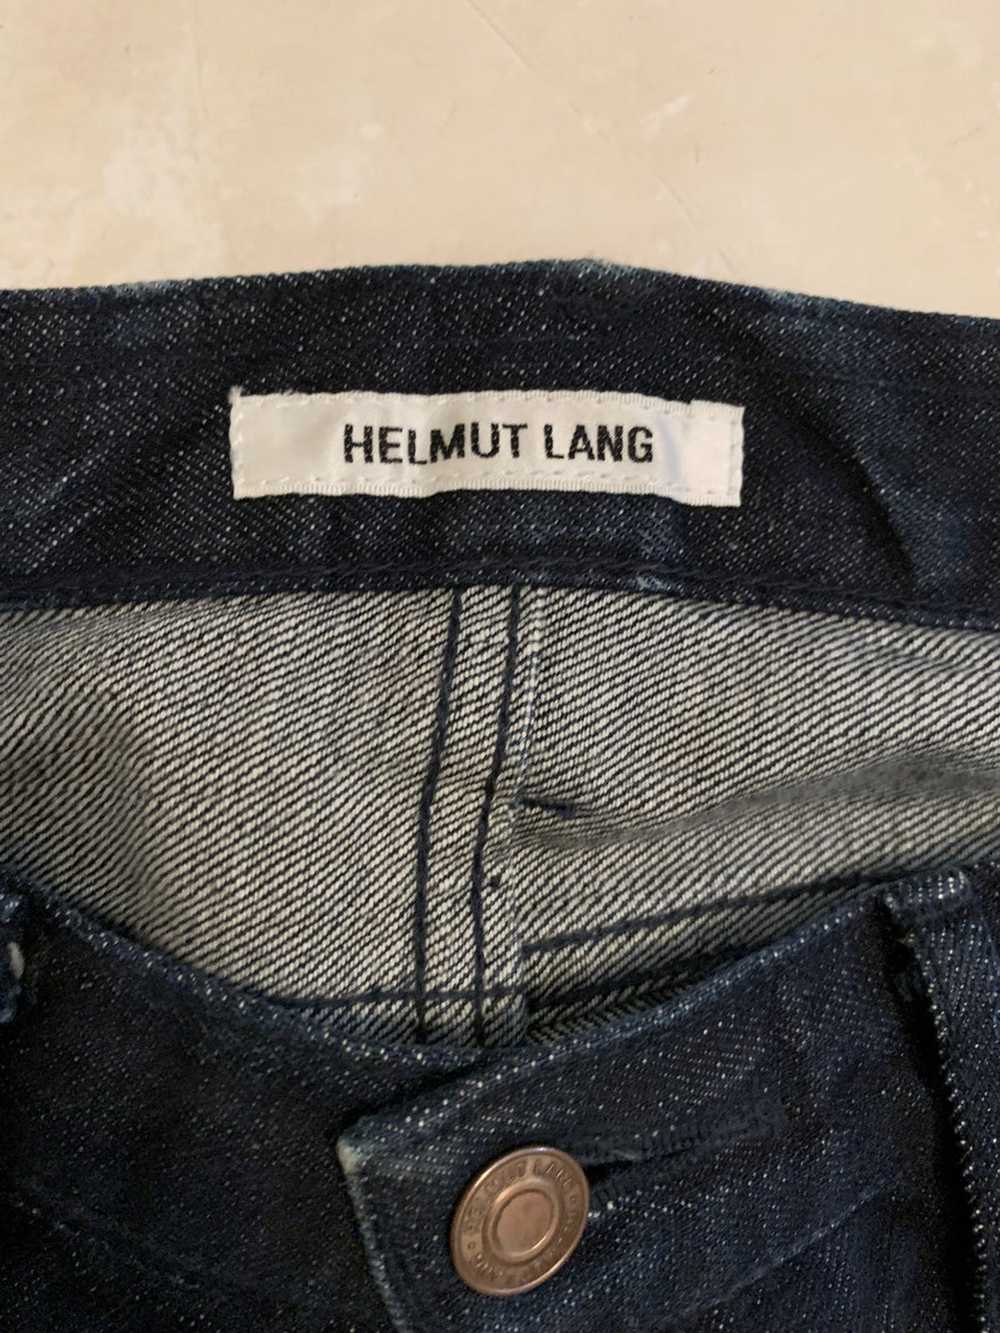 Helmut Lang Helmut Lang Vintage Jeans - image 2